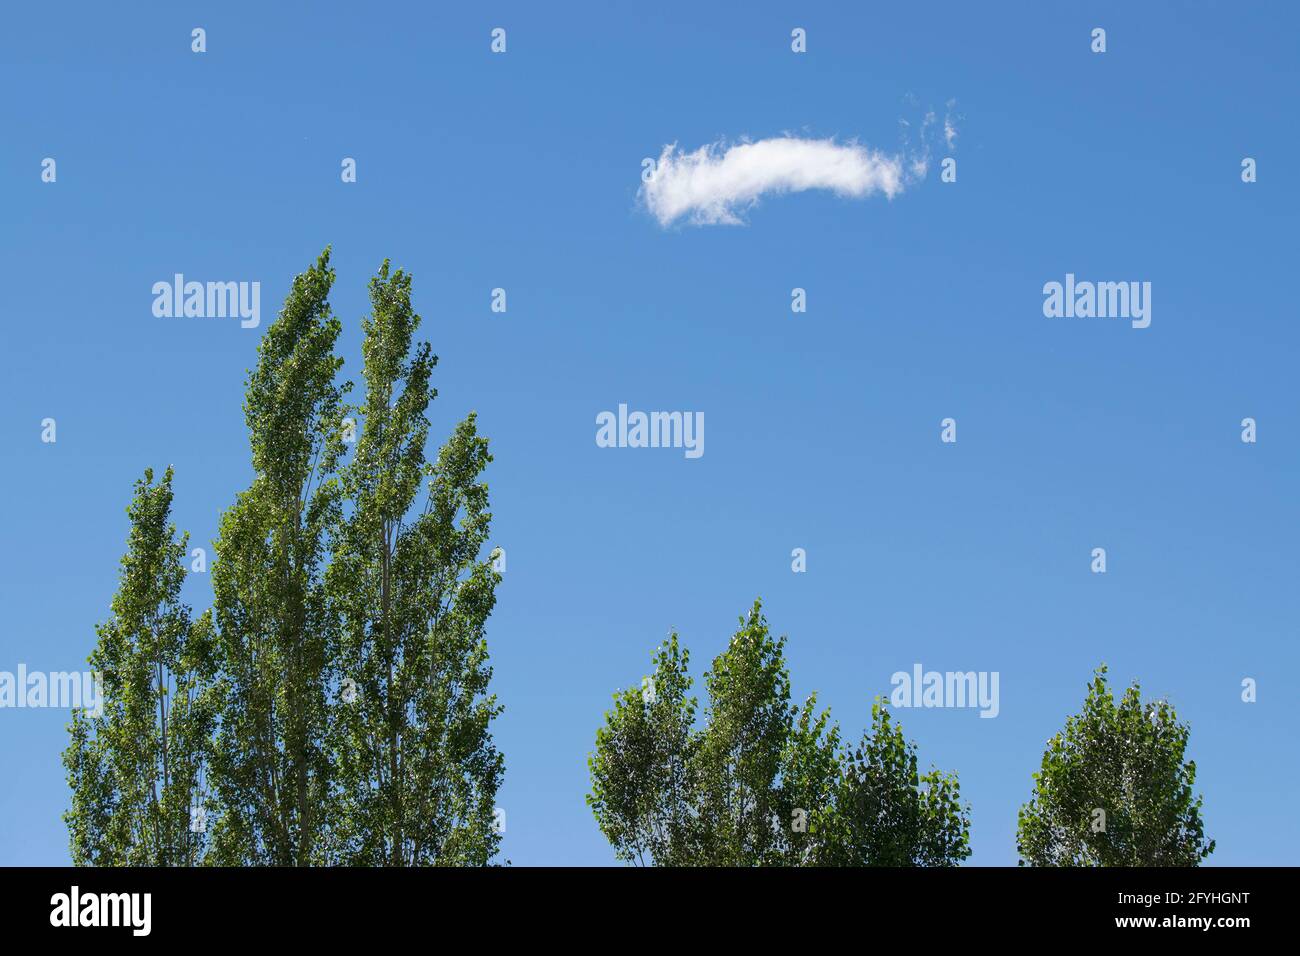 Cielo blu con la nuvola bianca in primo piano, alberi di pino verde in primo piano , immagine stock, Kolkata, Calcuatta, Bengala Occidentale, India Foto Stock